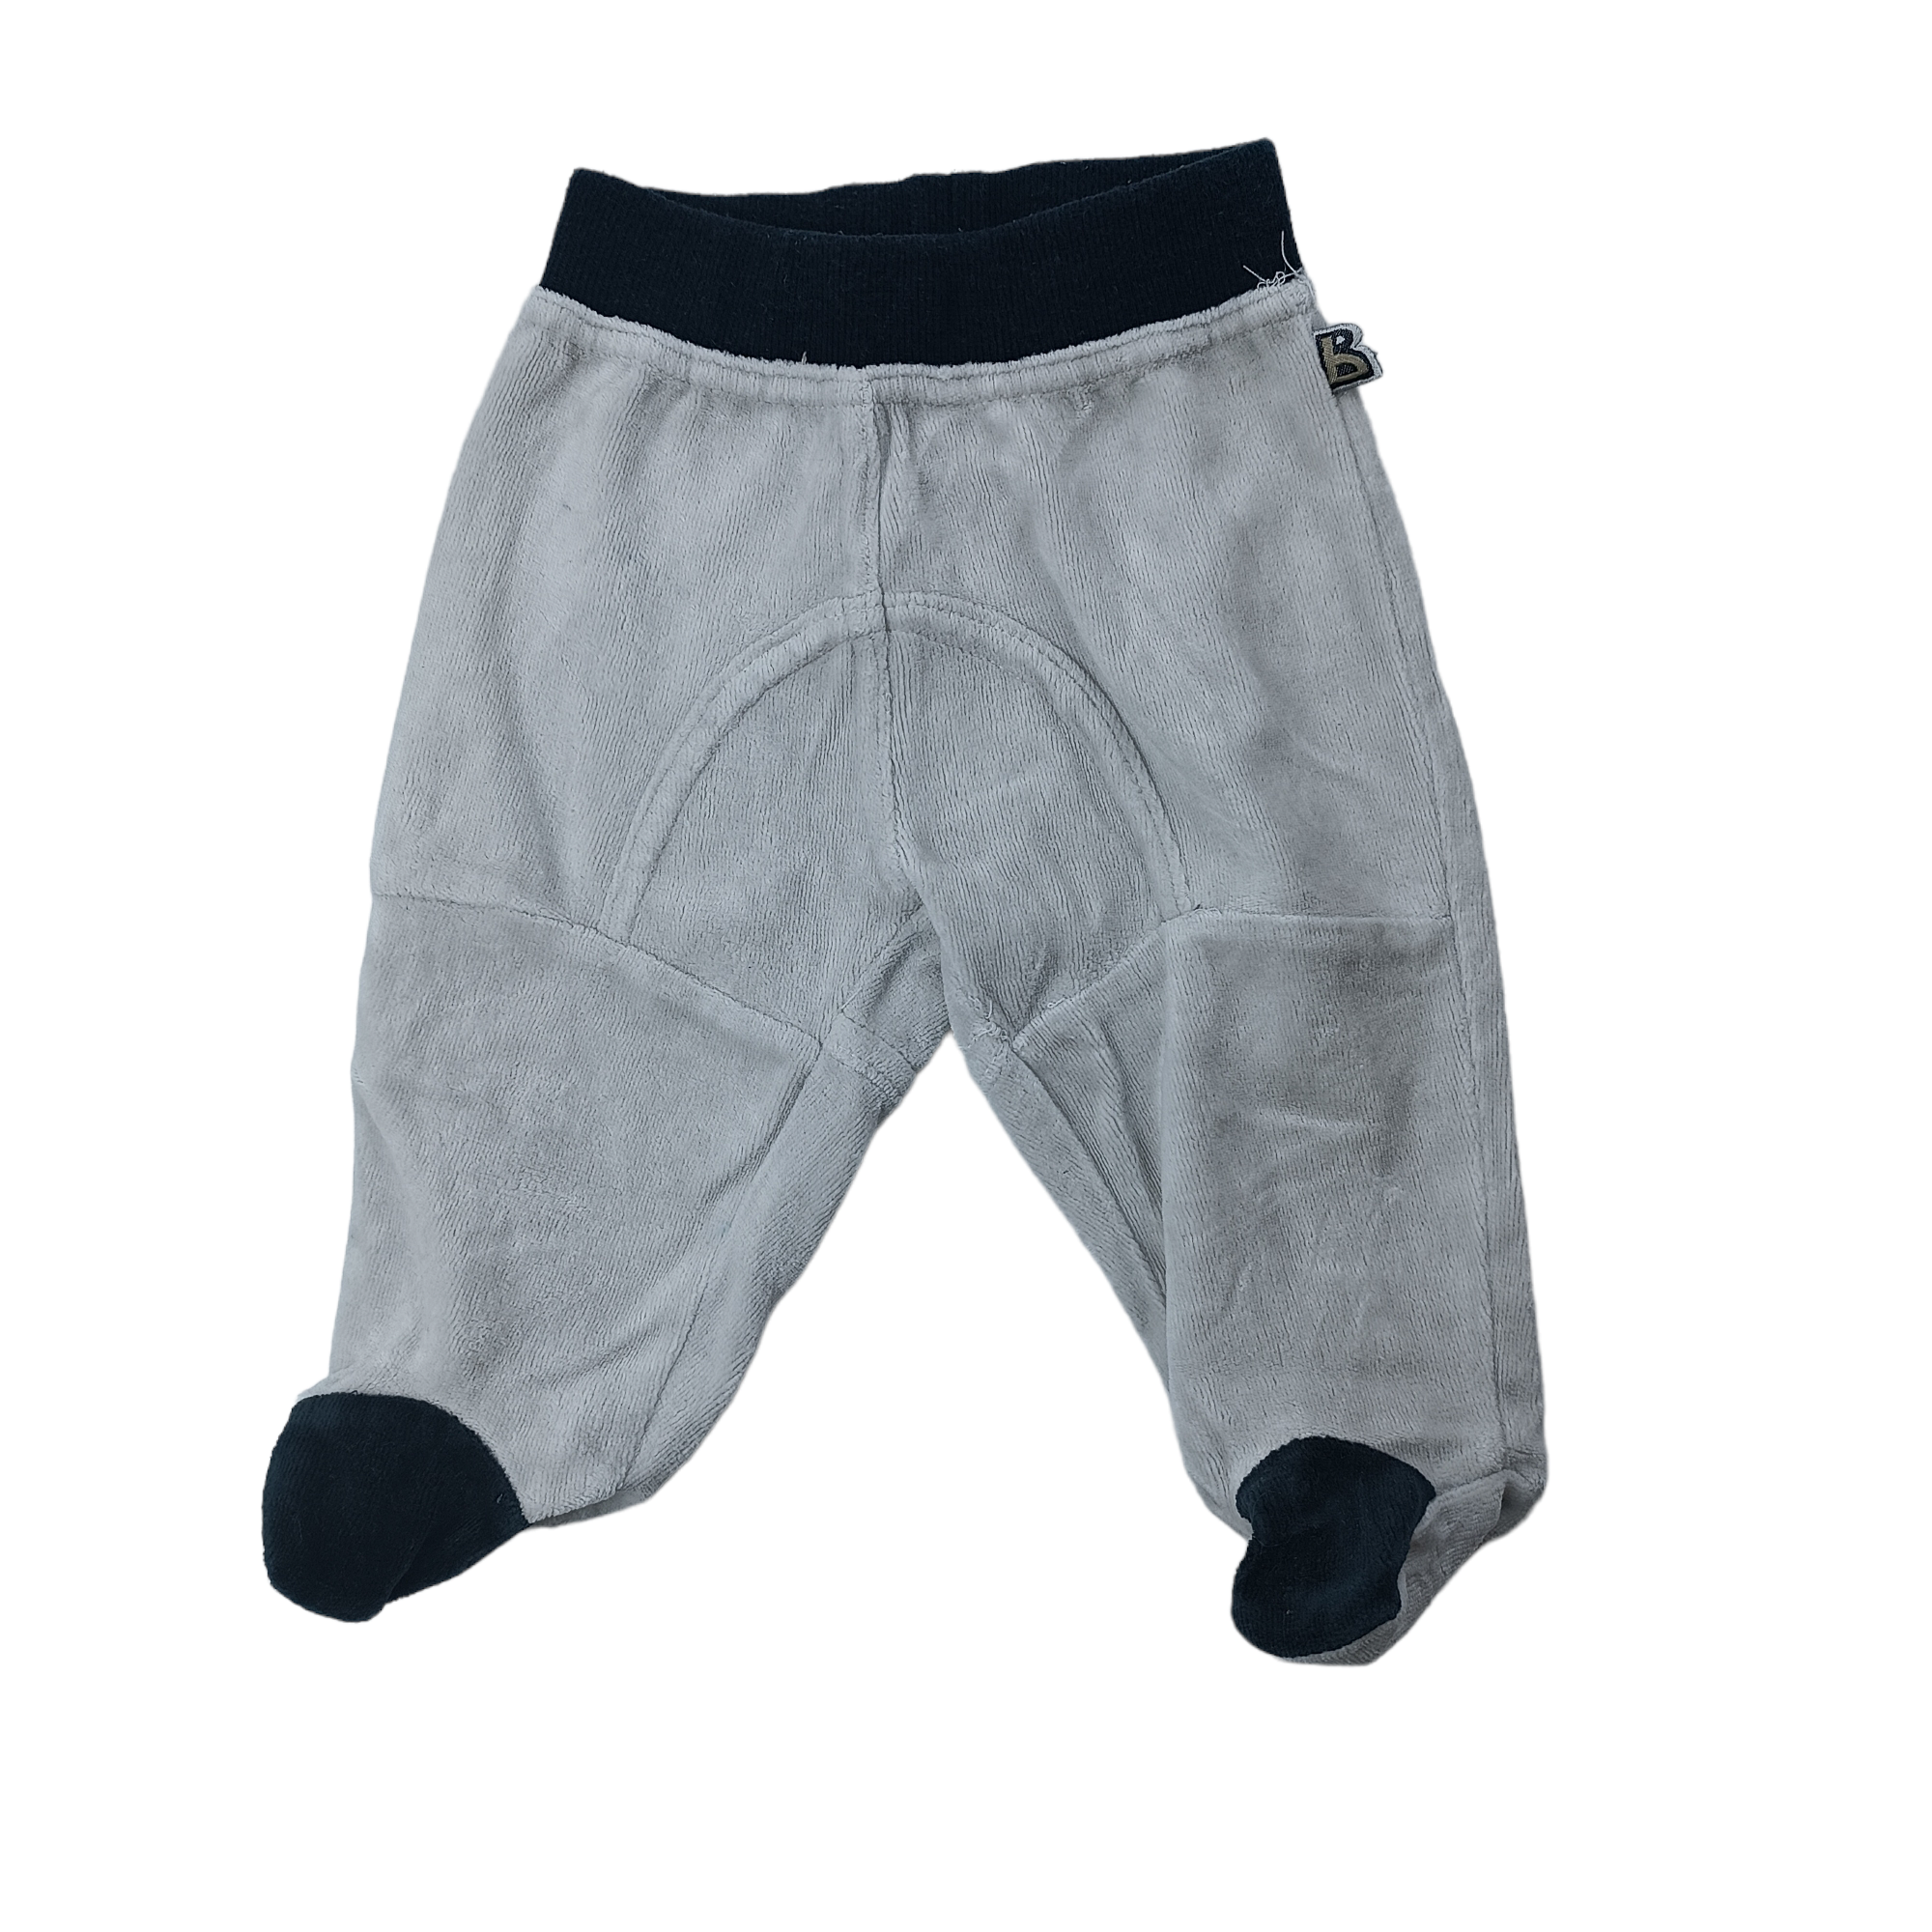 Panty de plush gris con negro